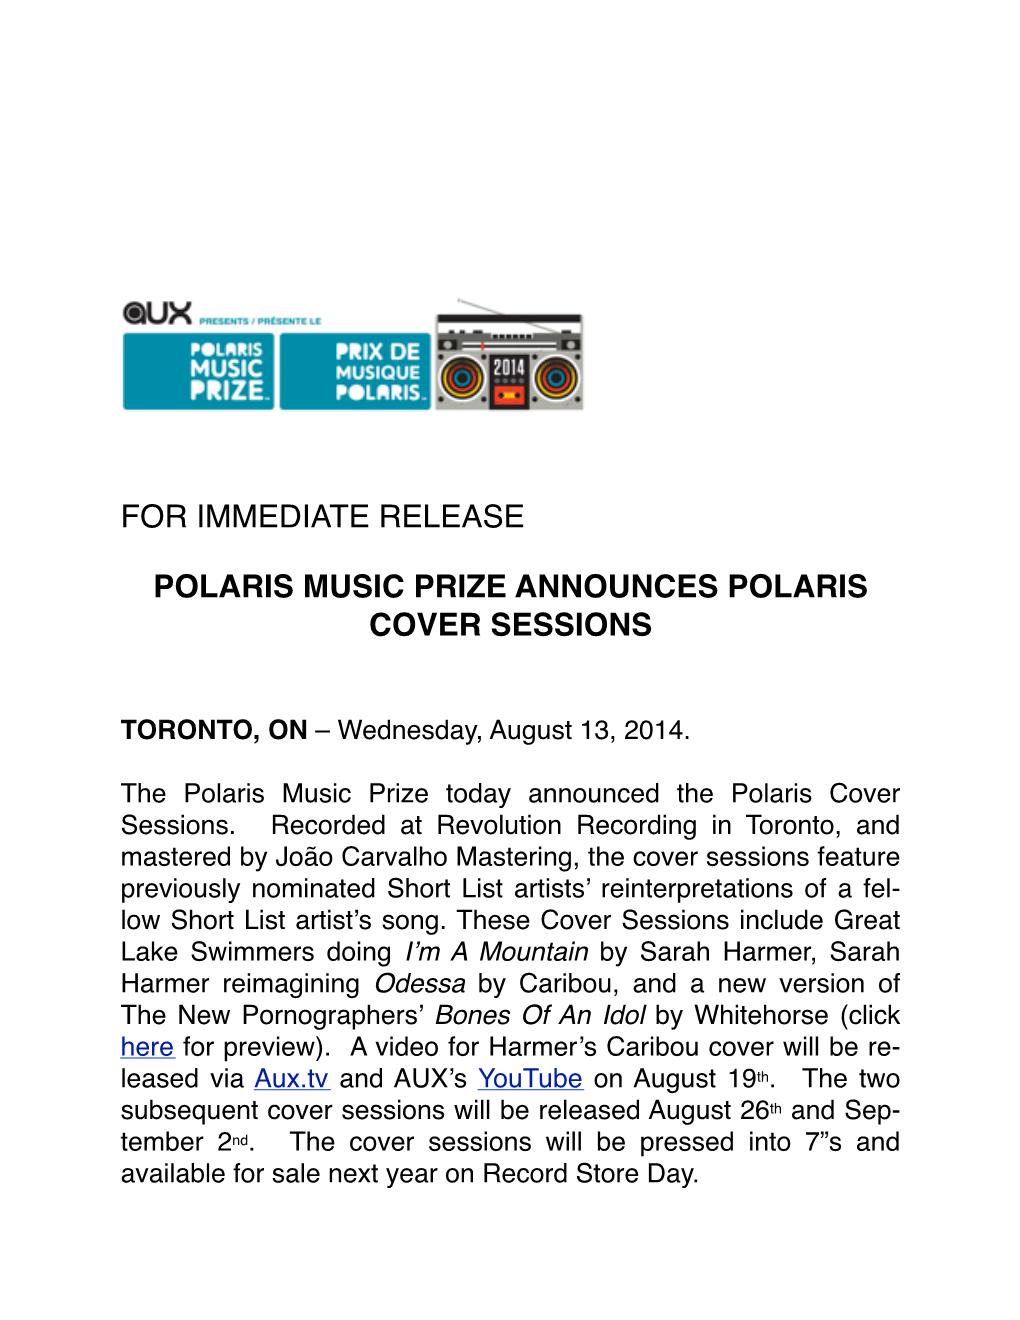 Polaris Music Prize Announces Polaris Cover Sessions